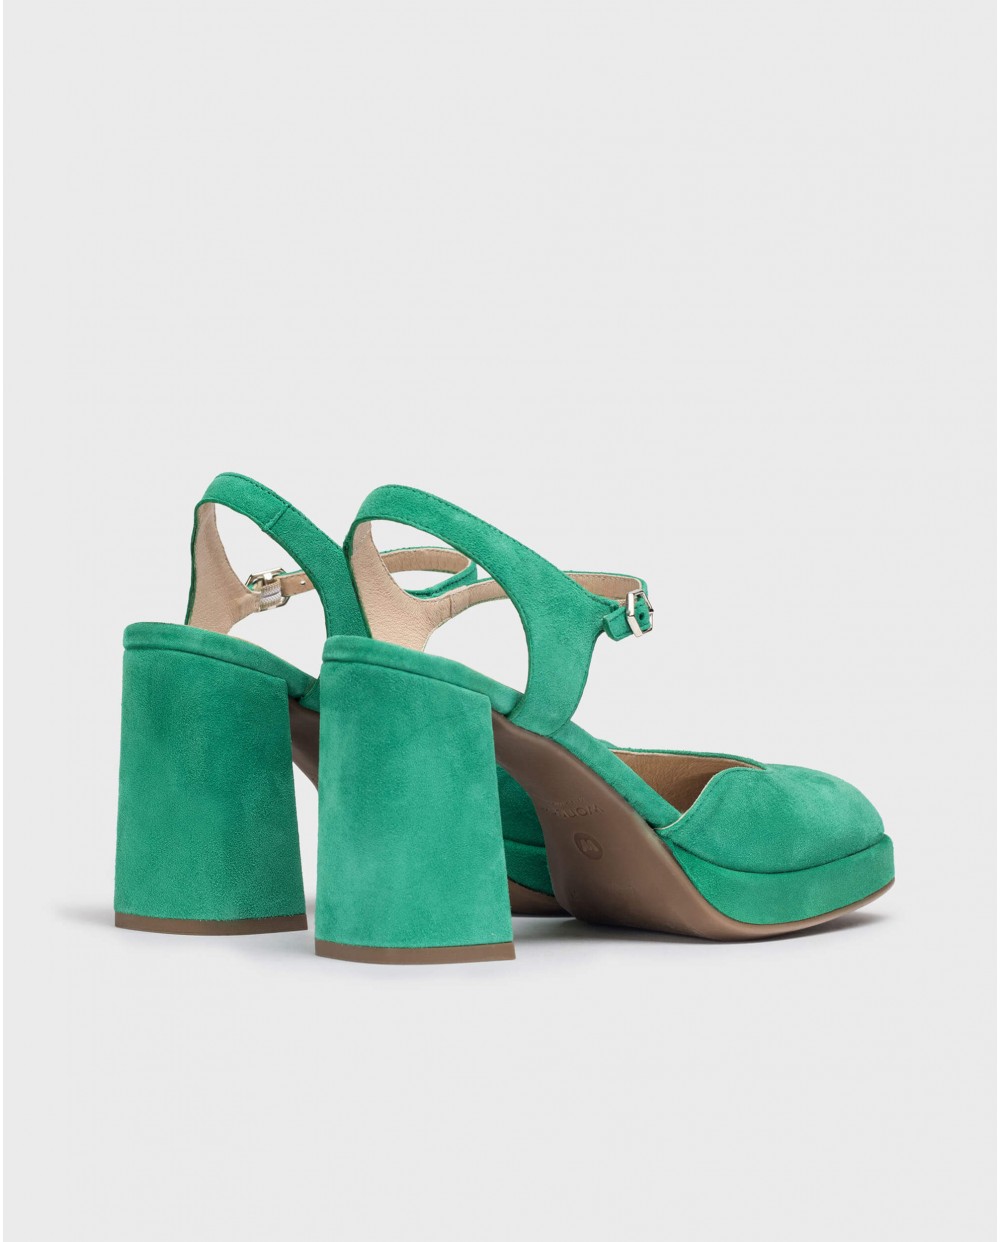 Wonders-Heels-Green Blue Shoes